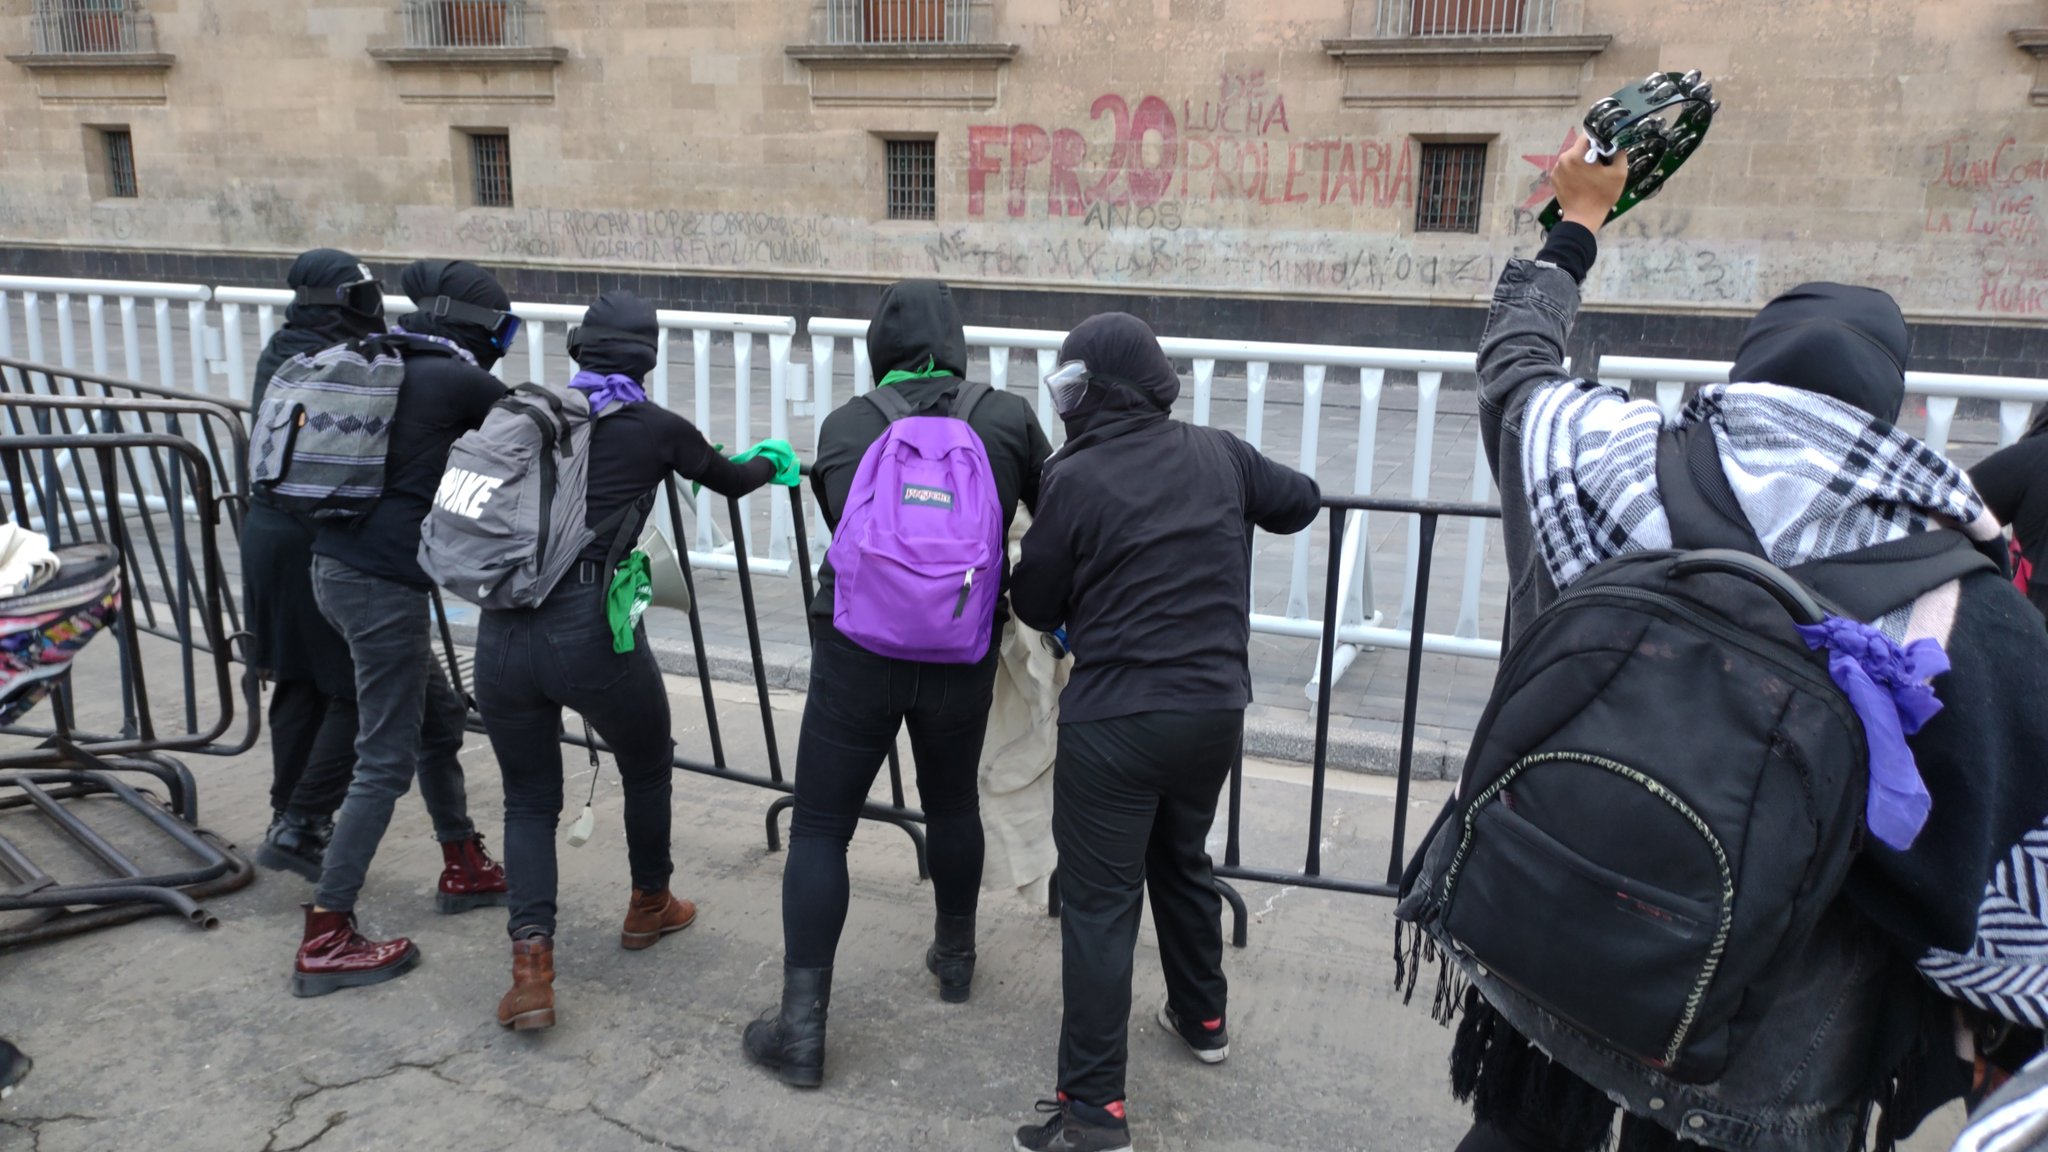 Mujeres protestan contra Félix Salgado frente a Palacio Nacional; policía impide su paso